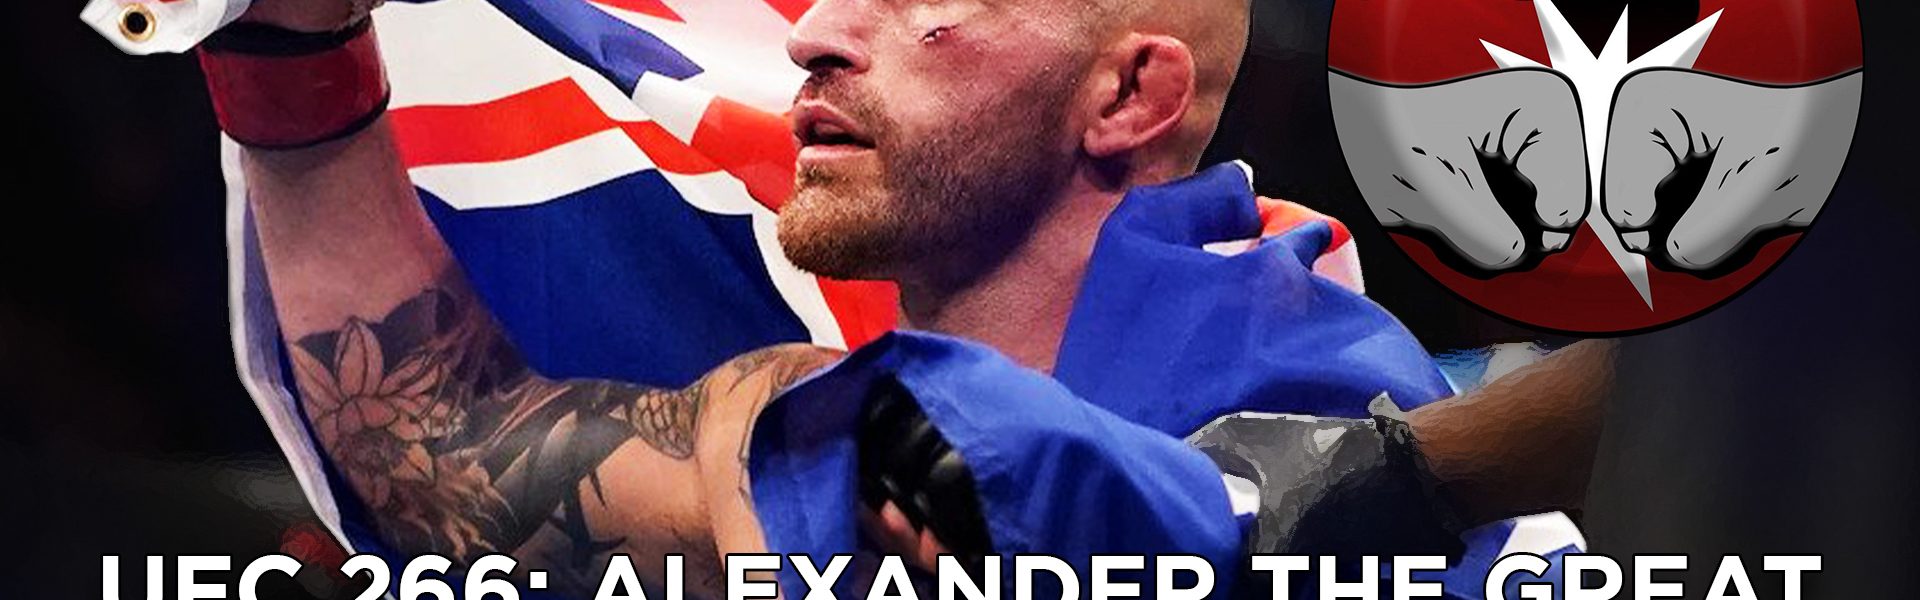 UFC 266: Alexander The Great, il regno del terrore - The Real FIGHT Talk Show Ep. 58